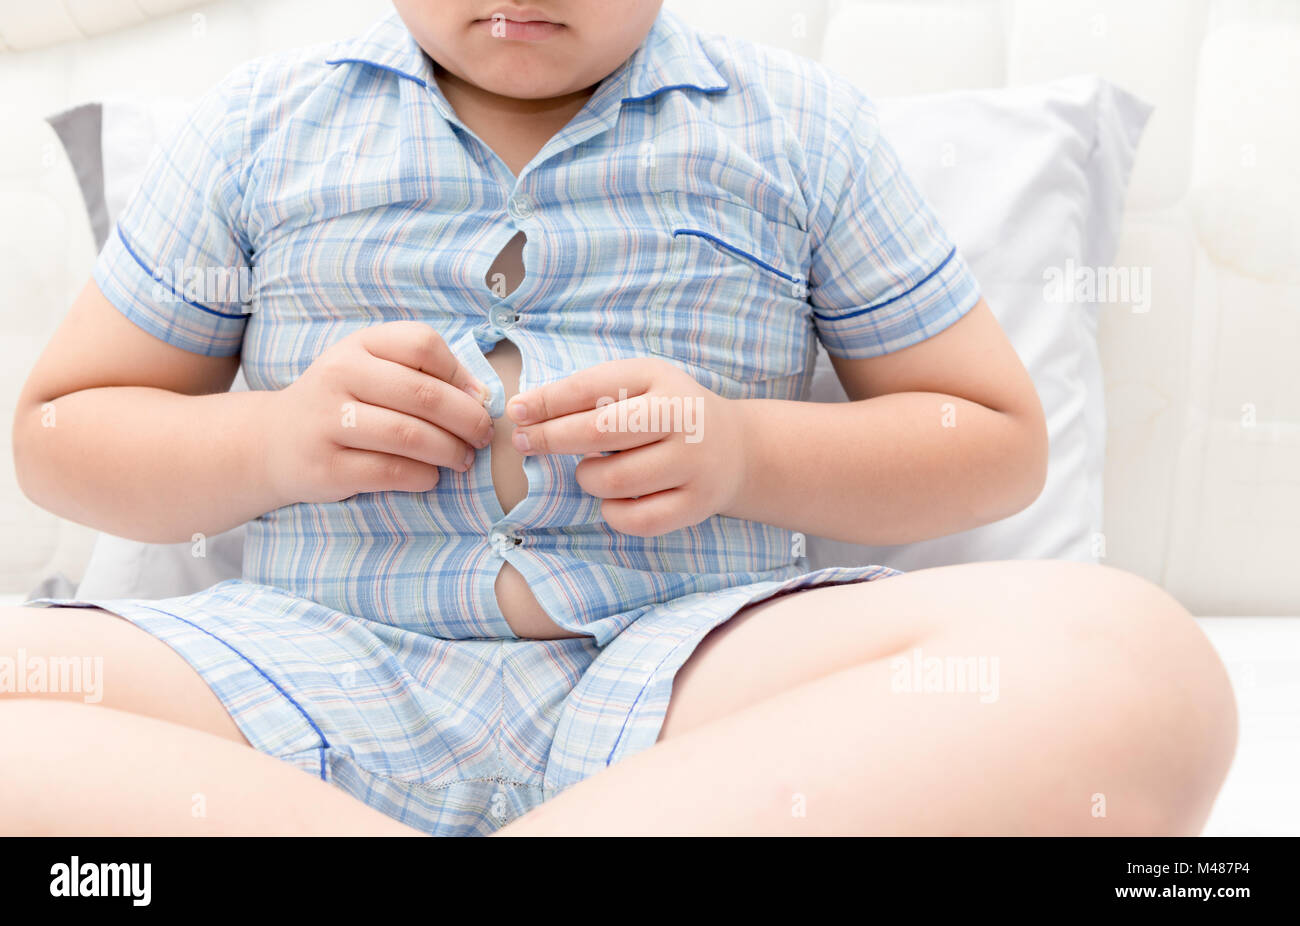 Obesi Fat Boy in sovrappeso. Maglietta stretta pigiami, concetto sano Foto Stock